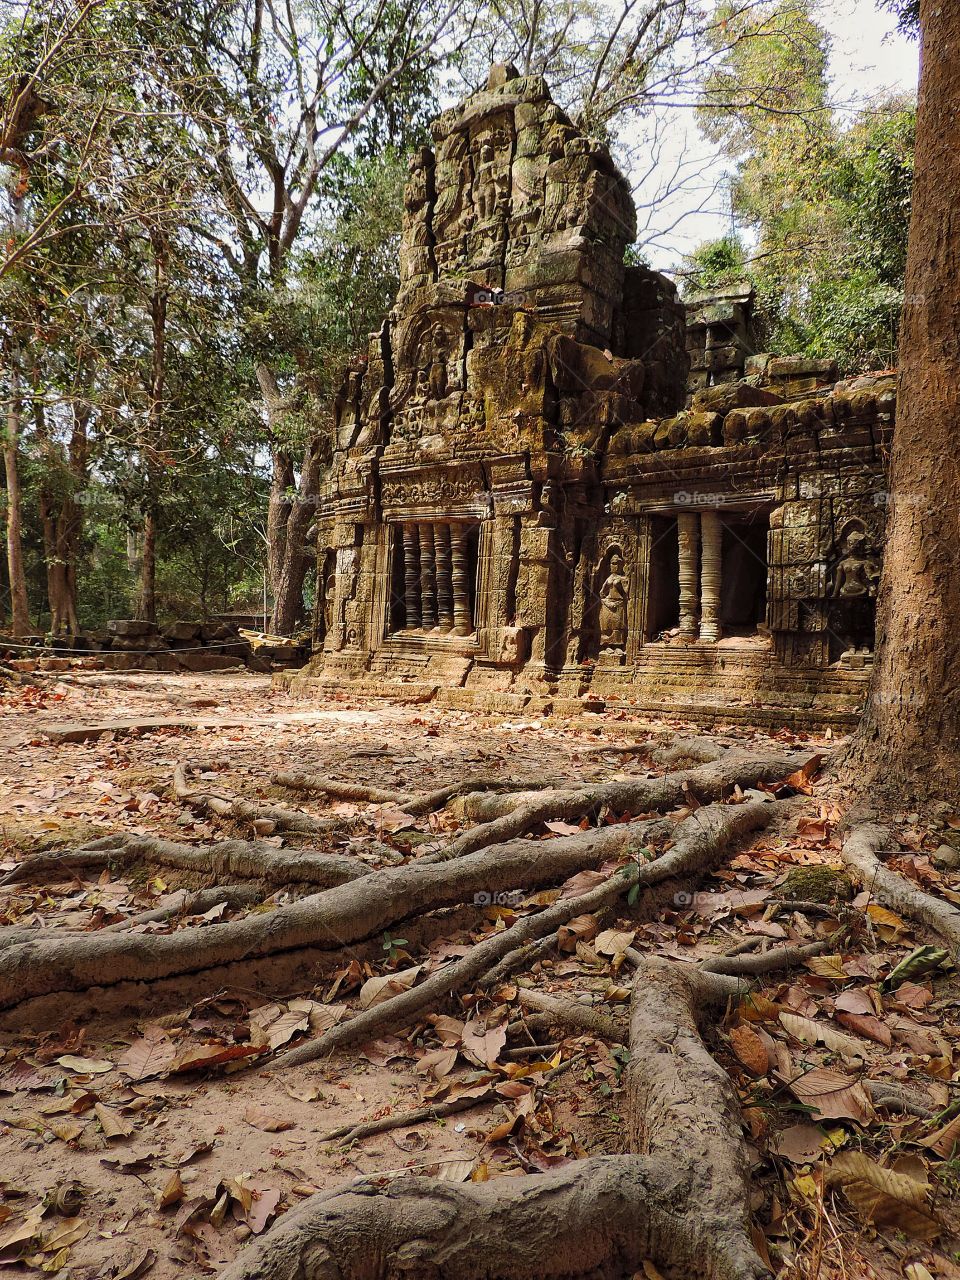 The fantastic temple of Ta Prohm in Cambodia